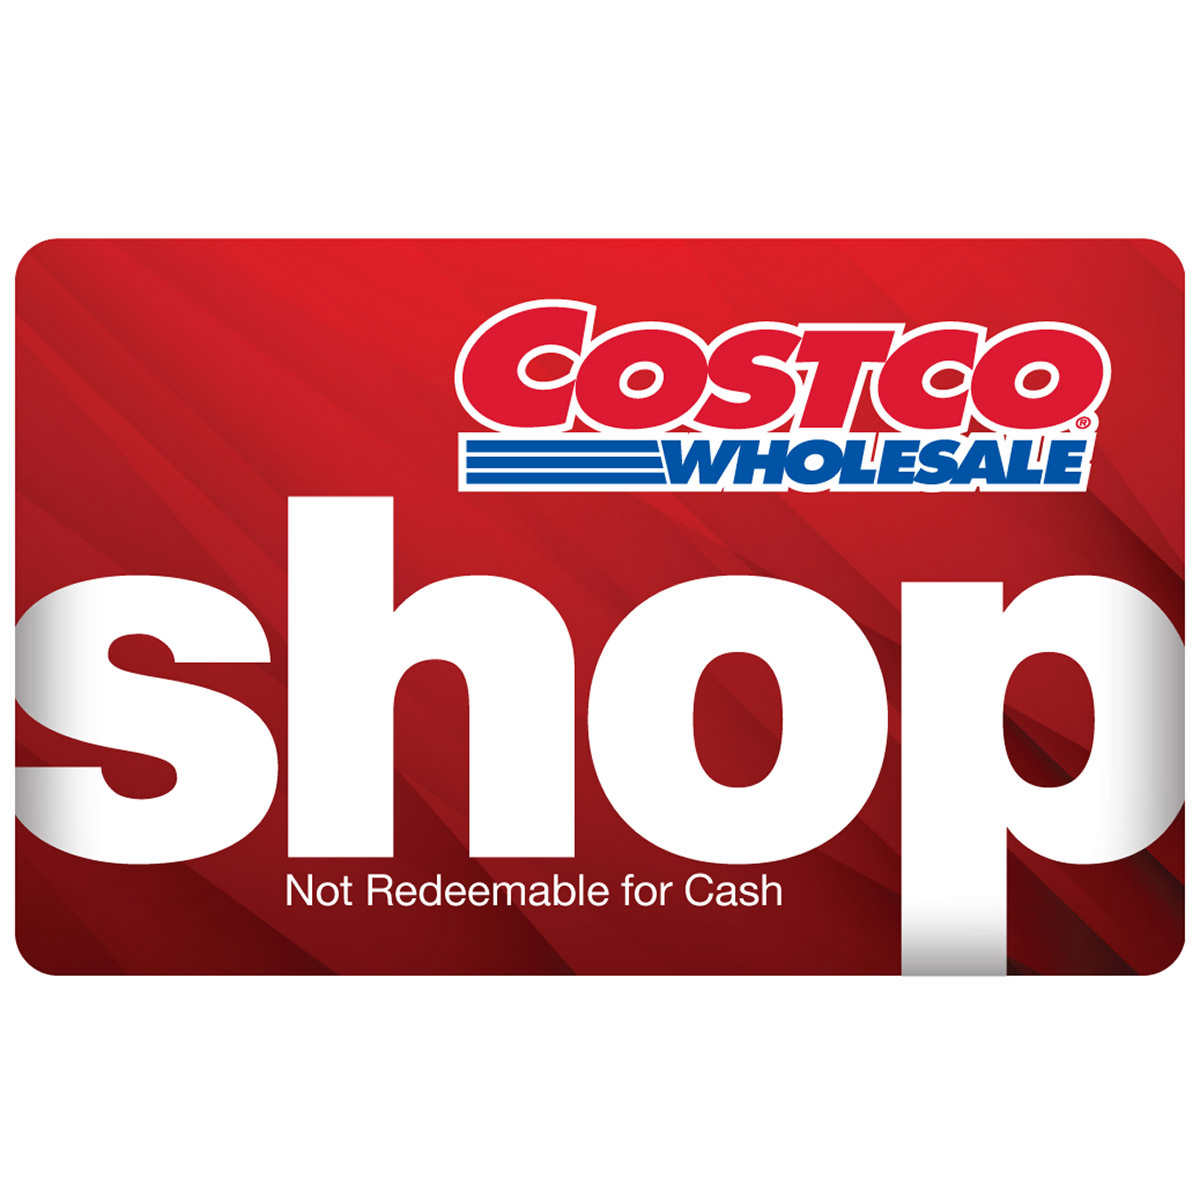 Costco Shop Card Costco